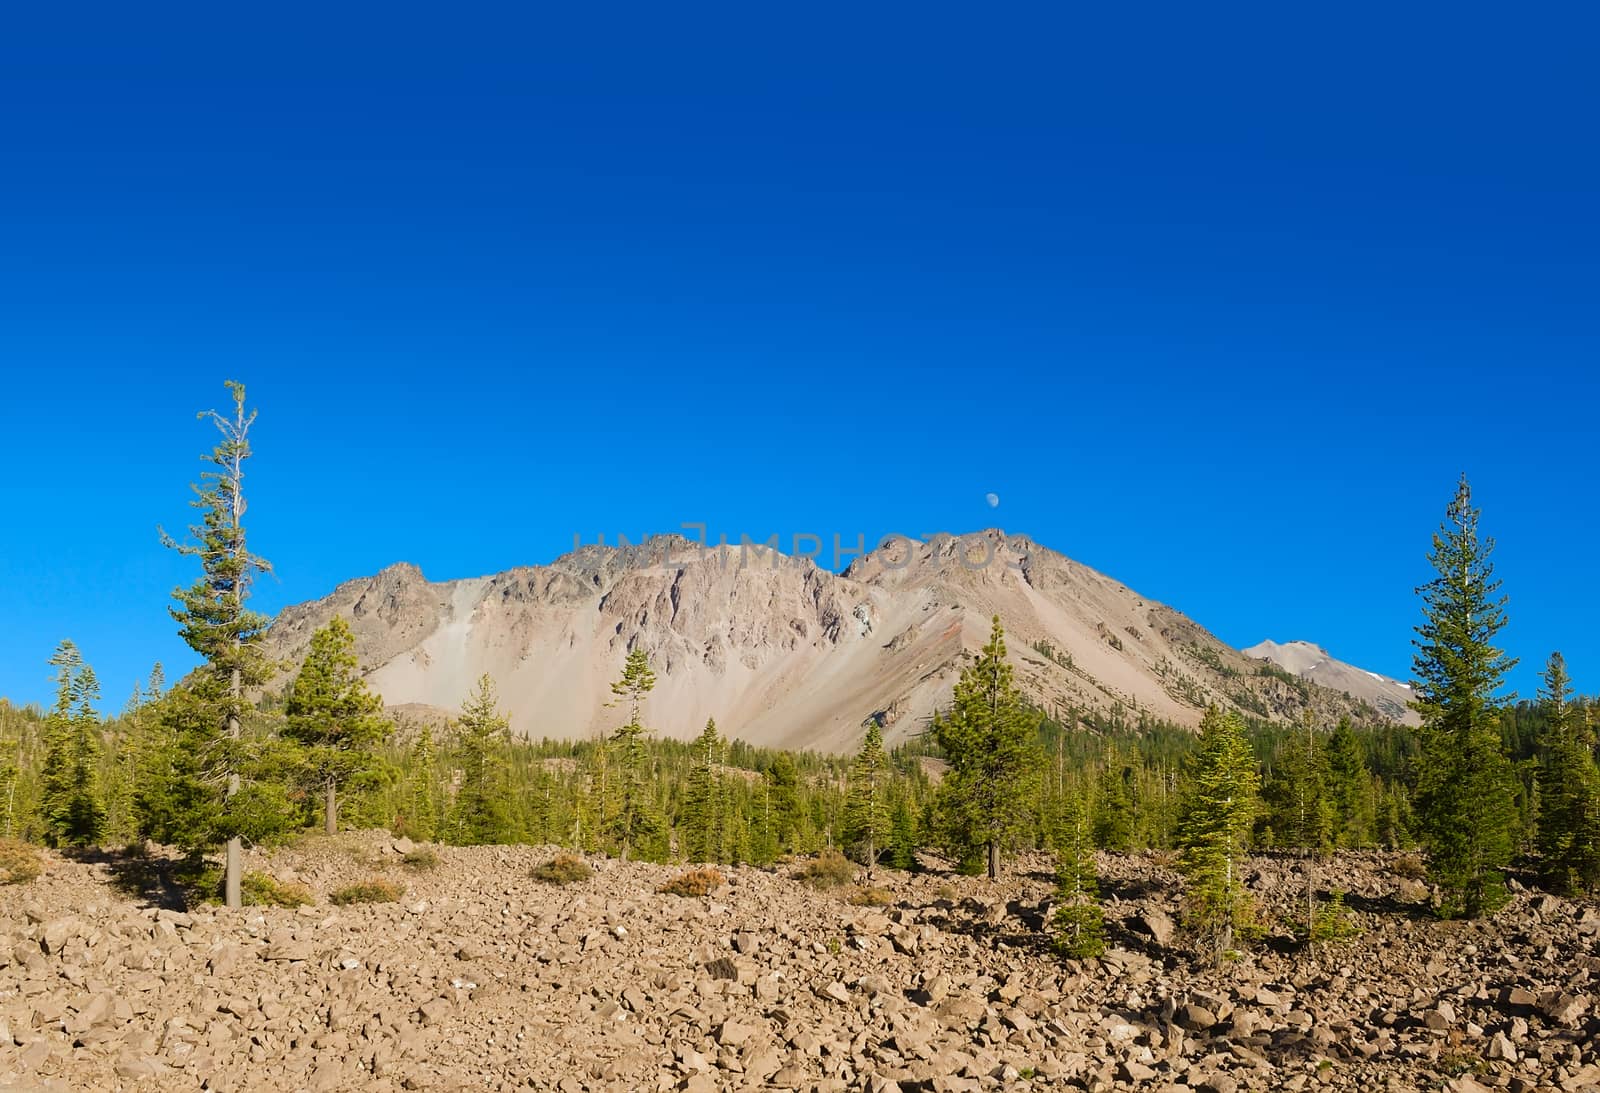 Mount Lassen with deposit of rocks ejected in the eruption. Mount Lassen is an active volcano in California.